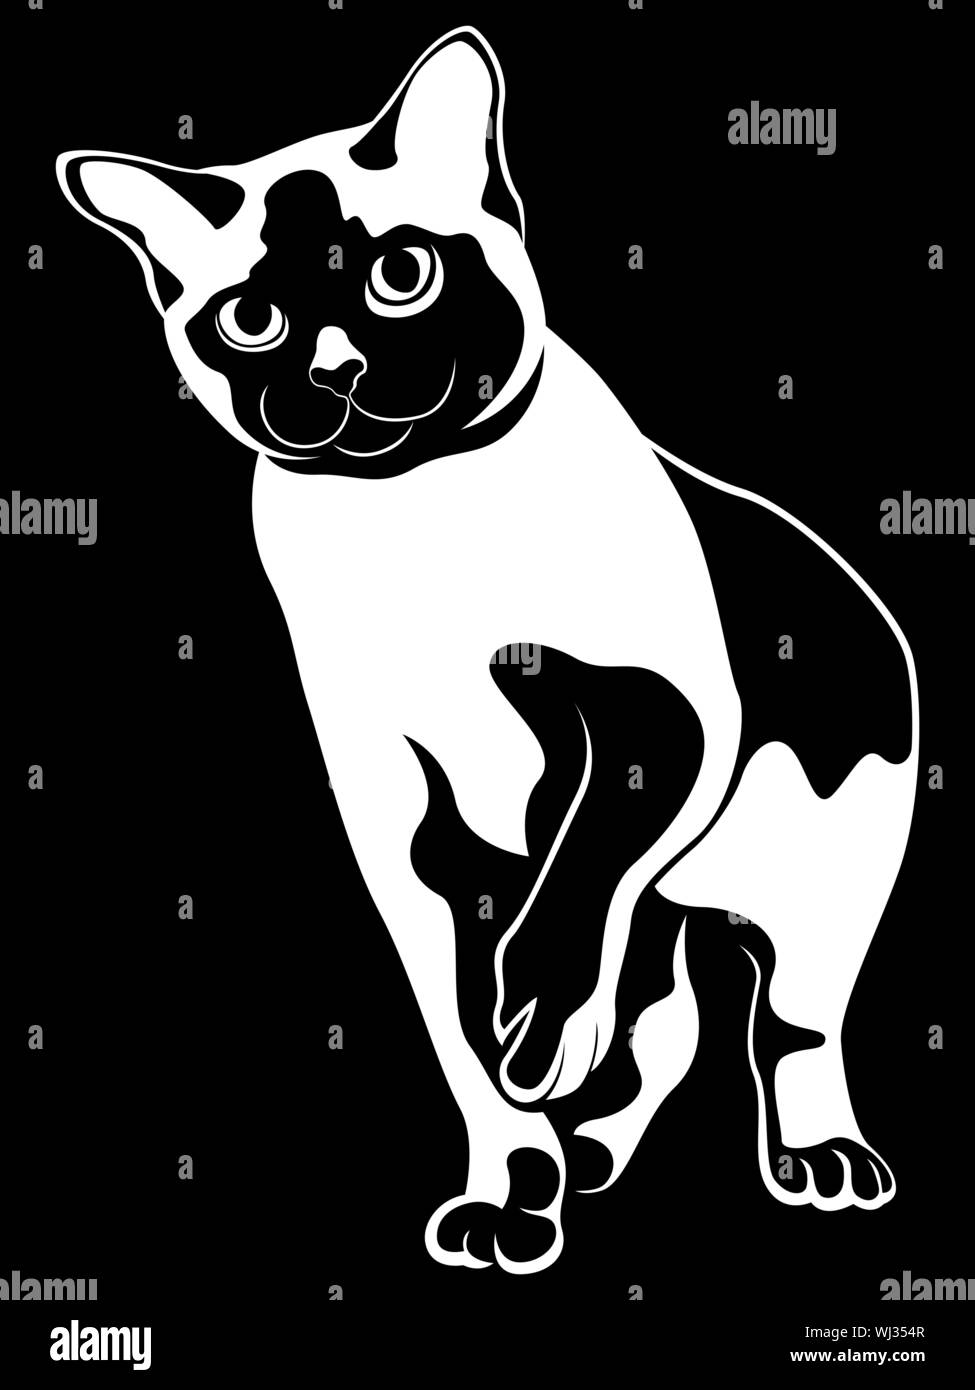 Abstrakte Katze Schablone, schwarz Vektor Handzeichnung auf weißem Hintergrund Stock Vektor